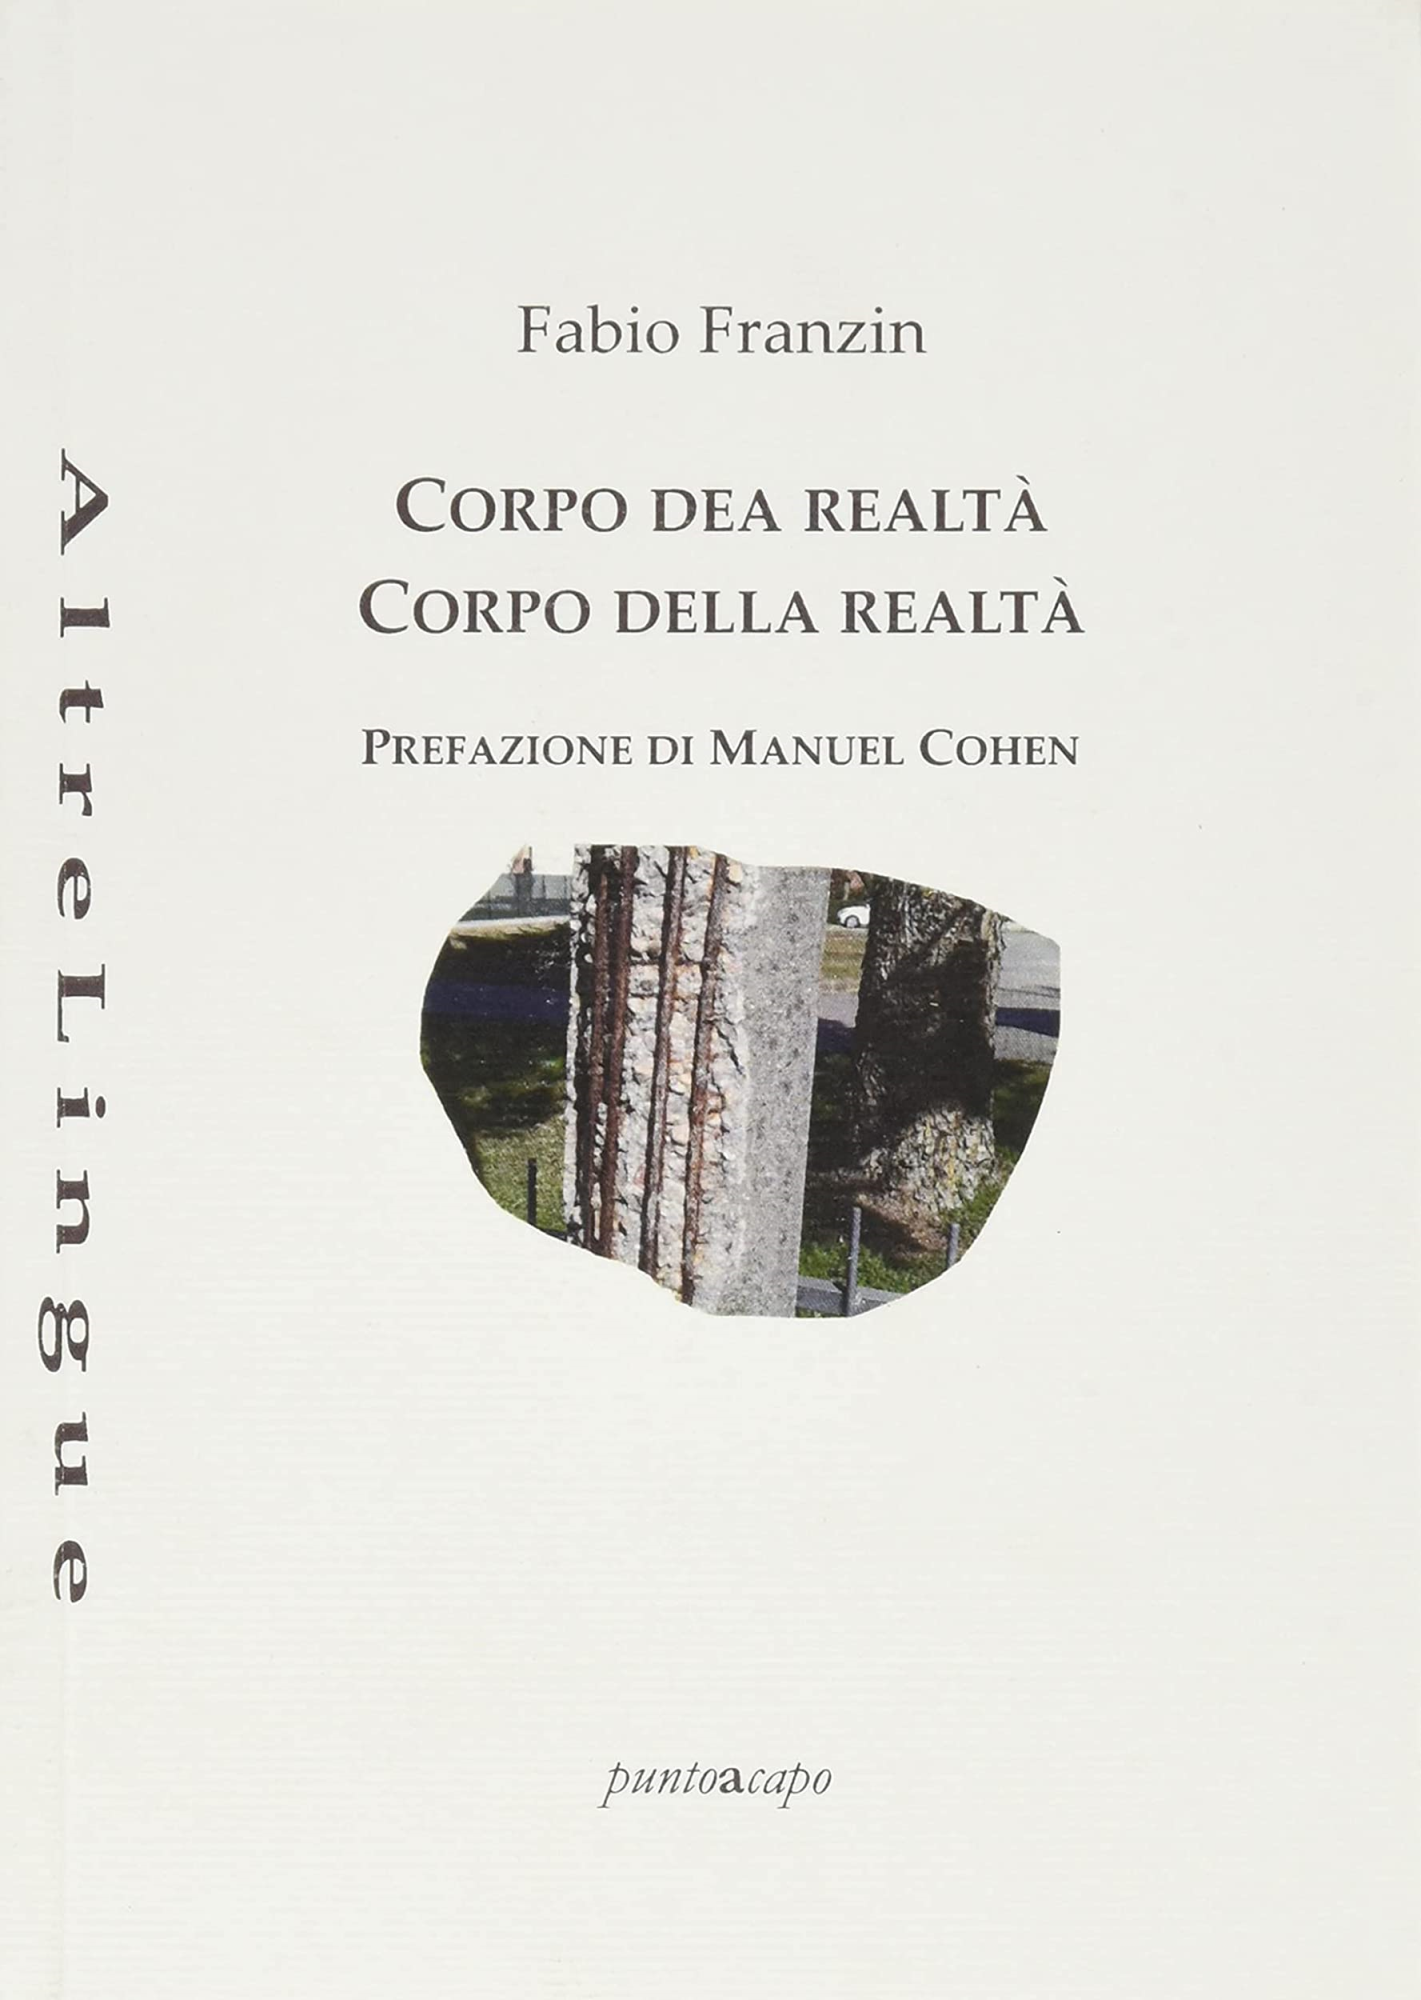 Libri Fabio Franzin - Corpo Dea Realta-Corpo Della Realta NUOVO SIGILLATO, EDIZIONE DEL 15/03/2019 SUBITO DISPONIBILE